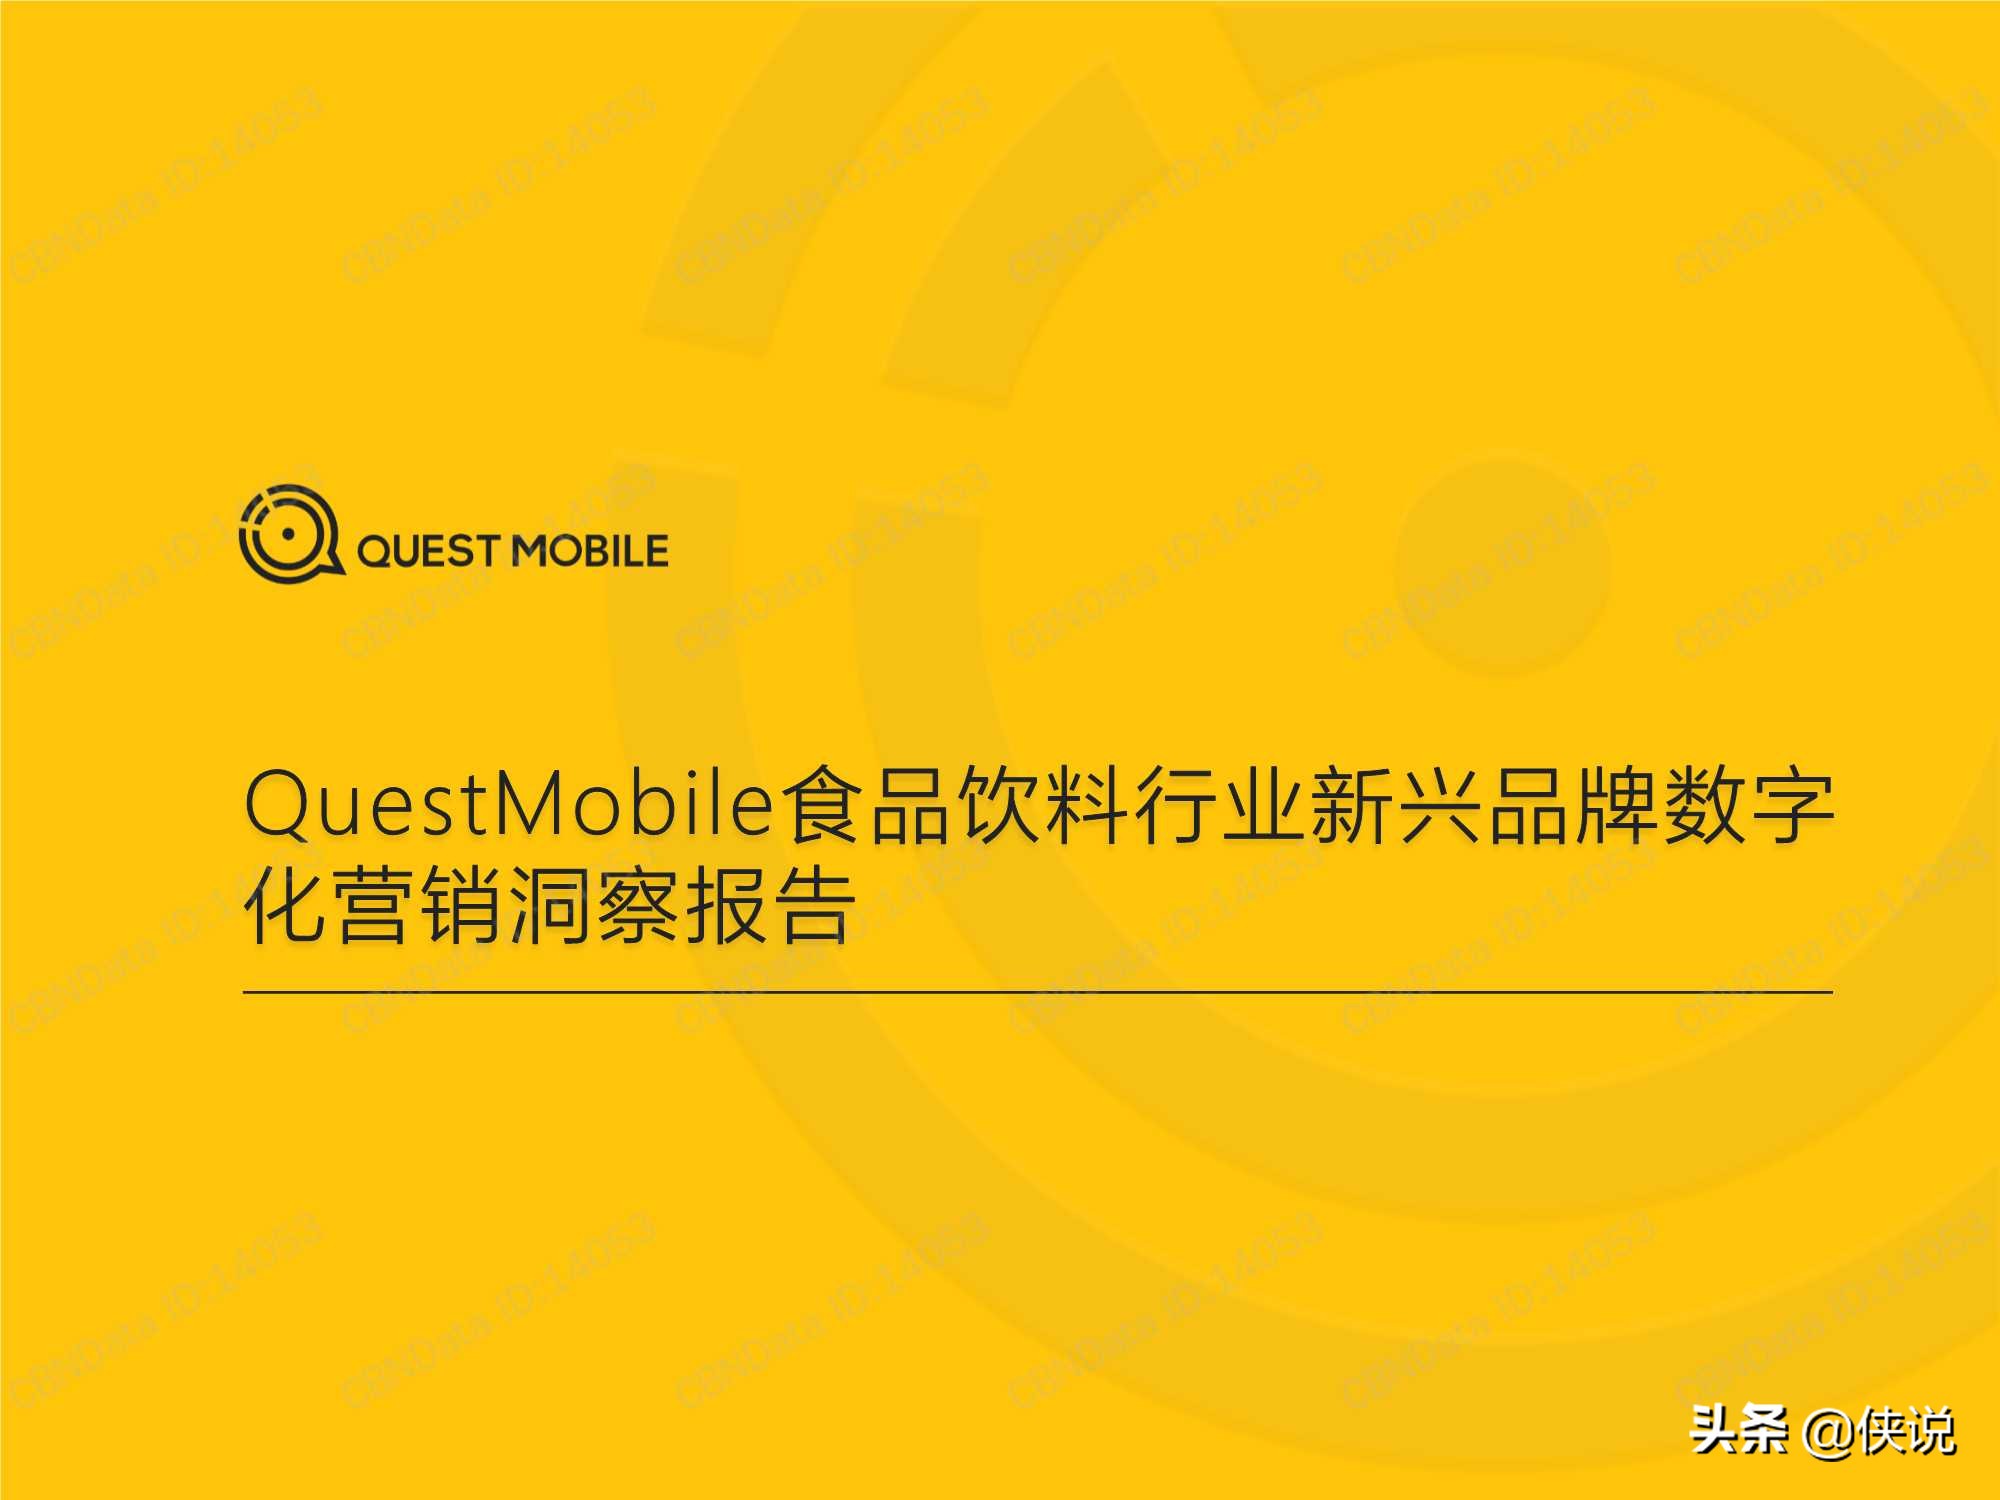 食品饮料行业新兴品牌数字化营销洞察报告（QuestMobile）